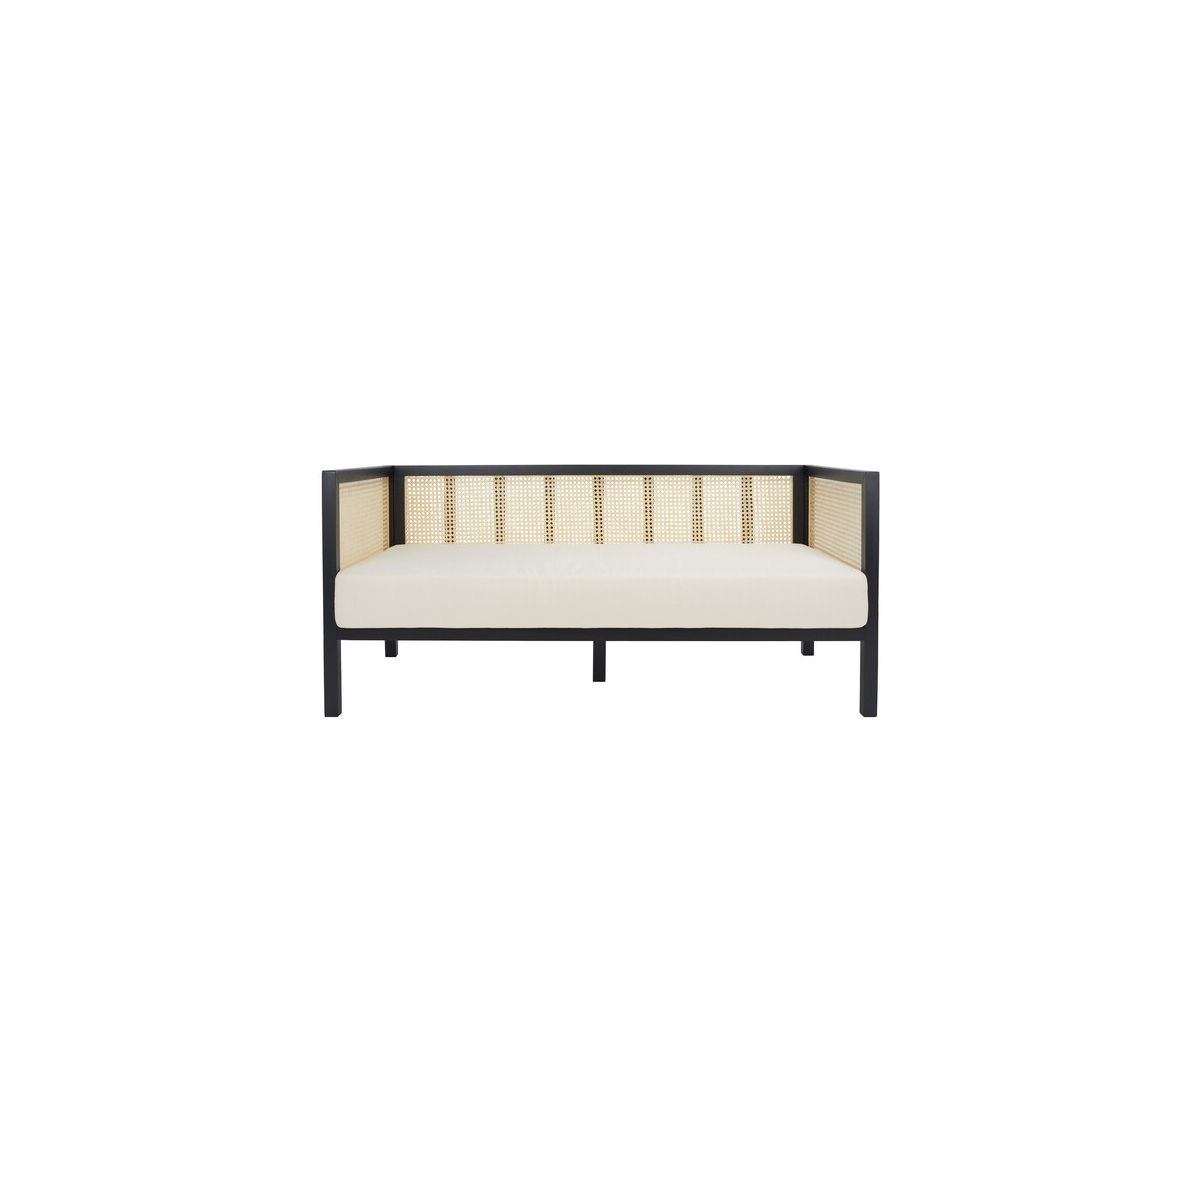 Safavieh Dune Rattan 3 Seater Sofa , LVS1500 - Black/Natural